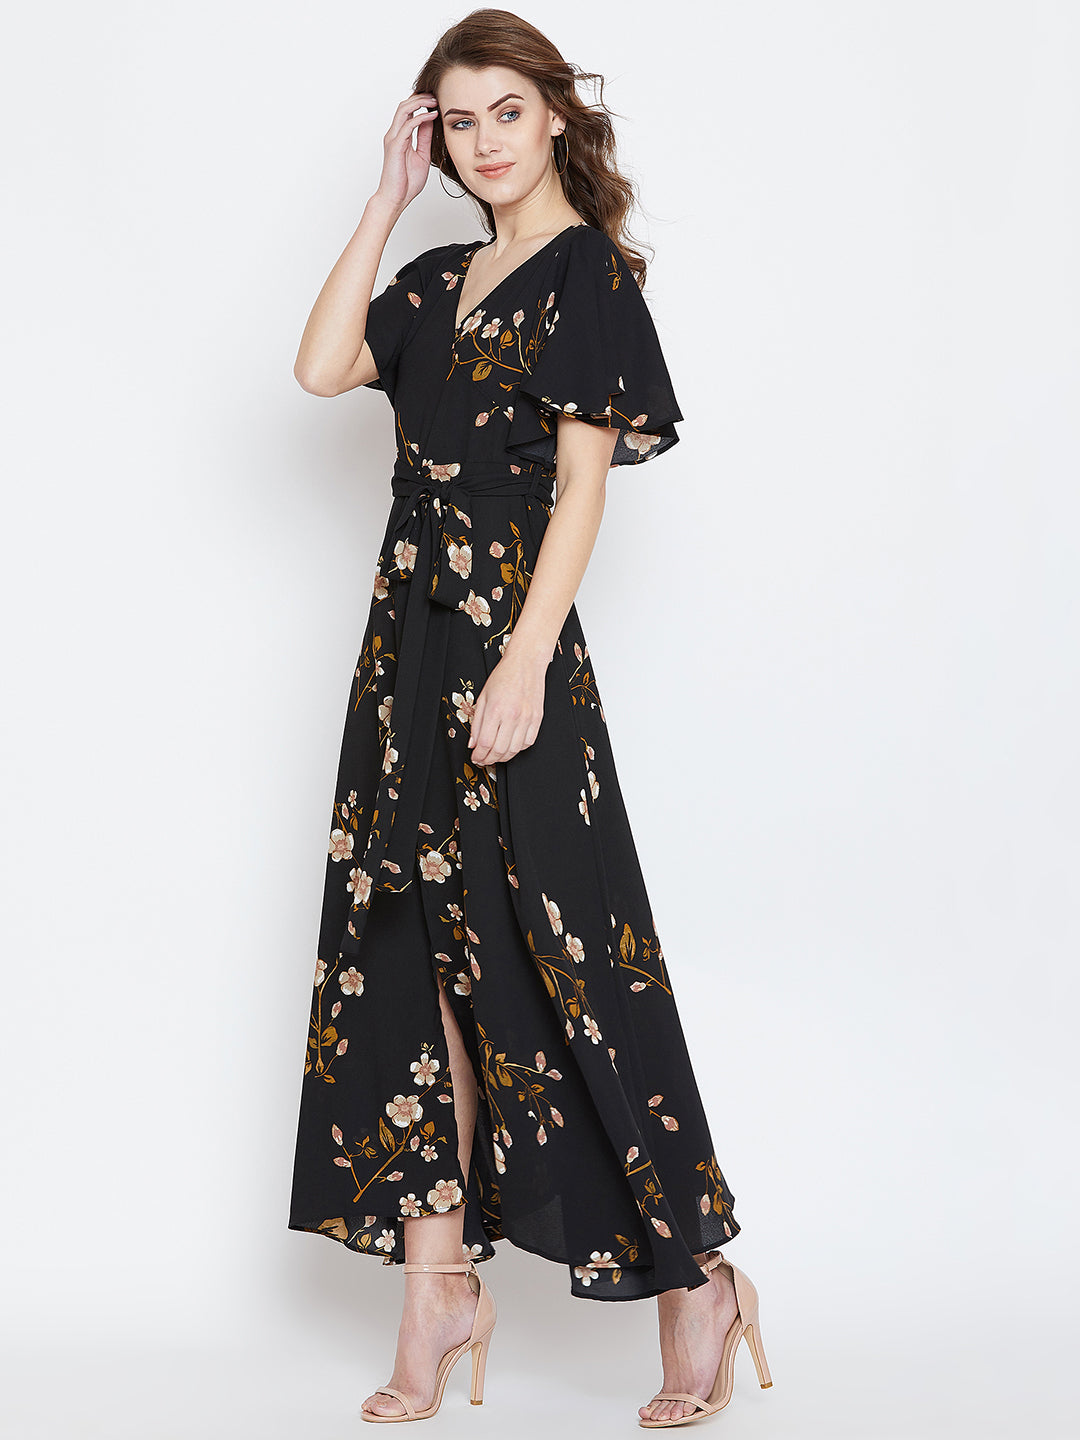 Black Floral Dresses for Women